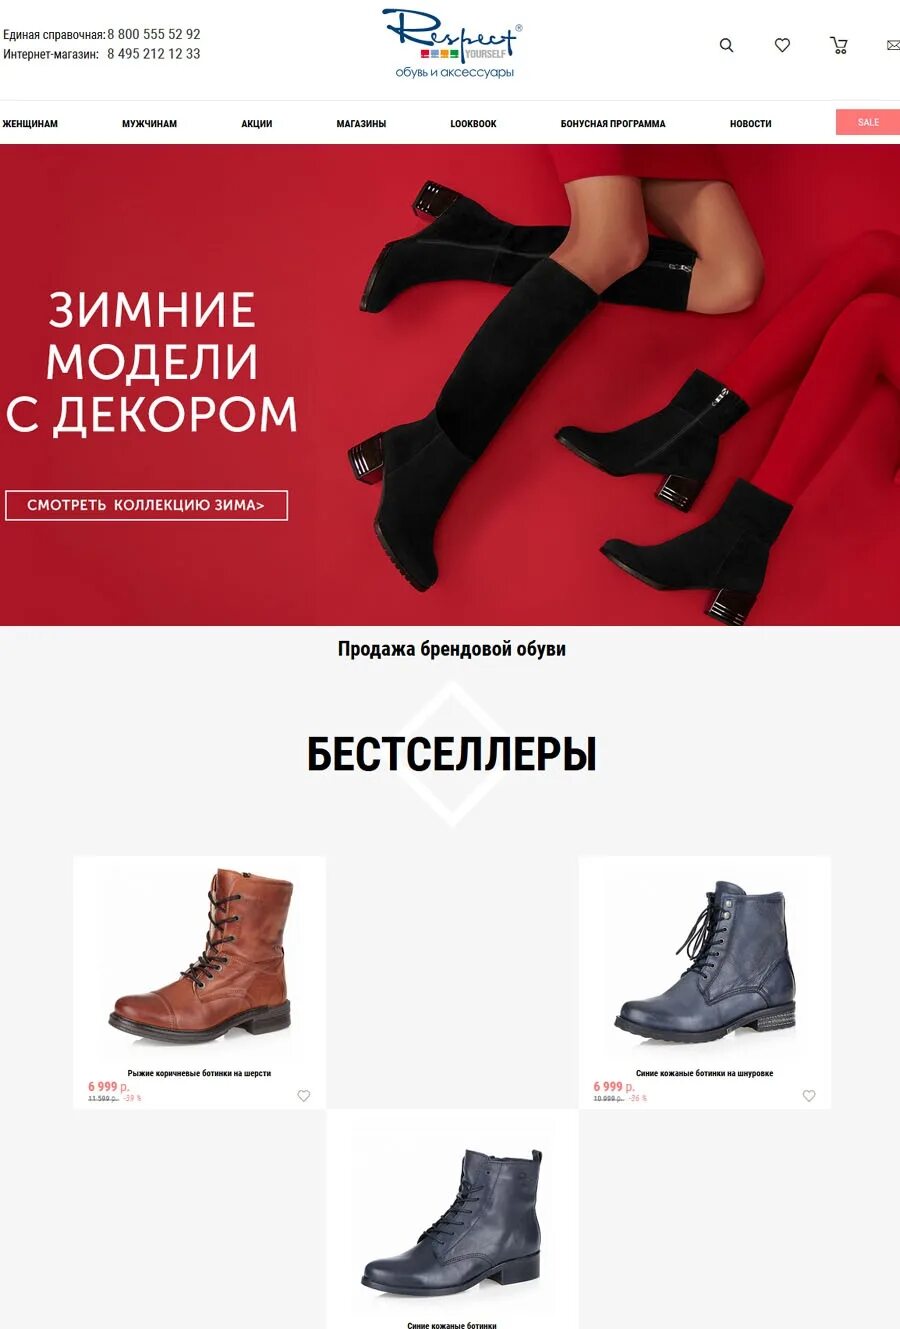 Обувь респект каталог женская. Respect обувь СПБ. Каталог обуви. Женская обувь интернет магазин.